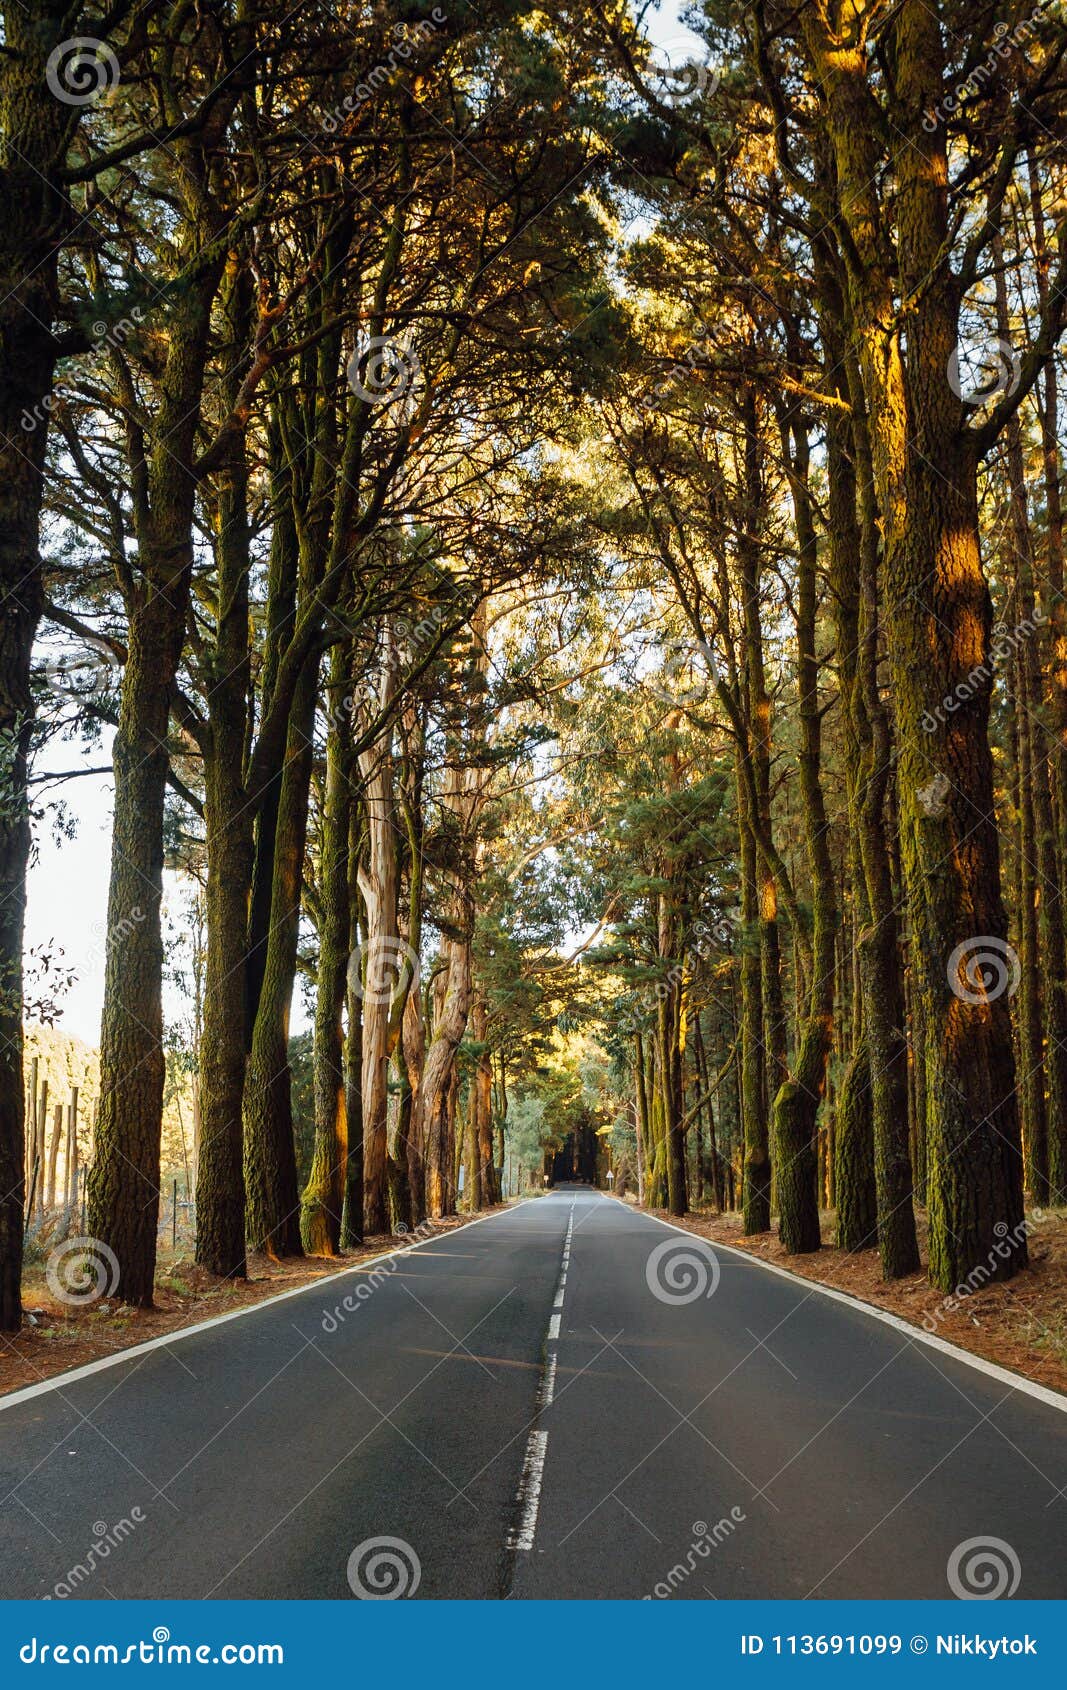 road in the forest la esperanza